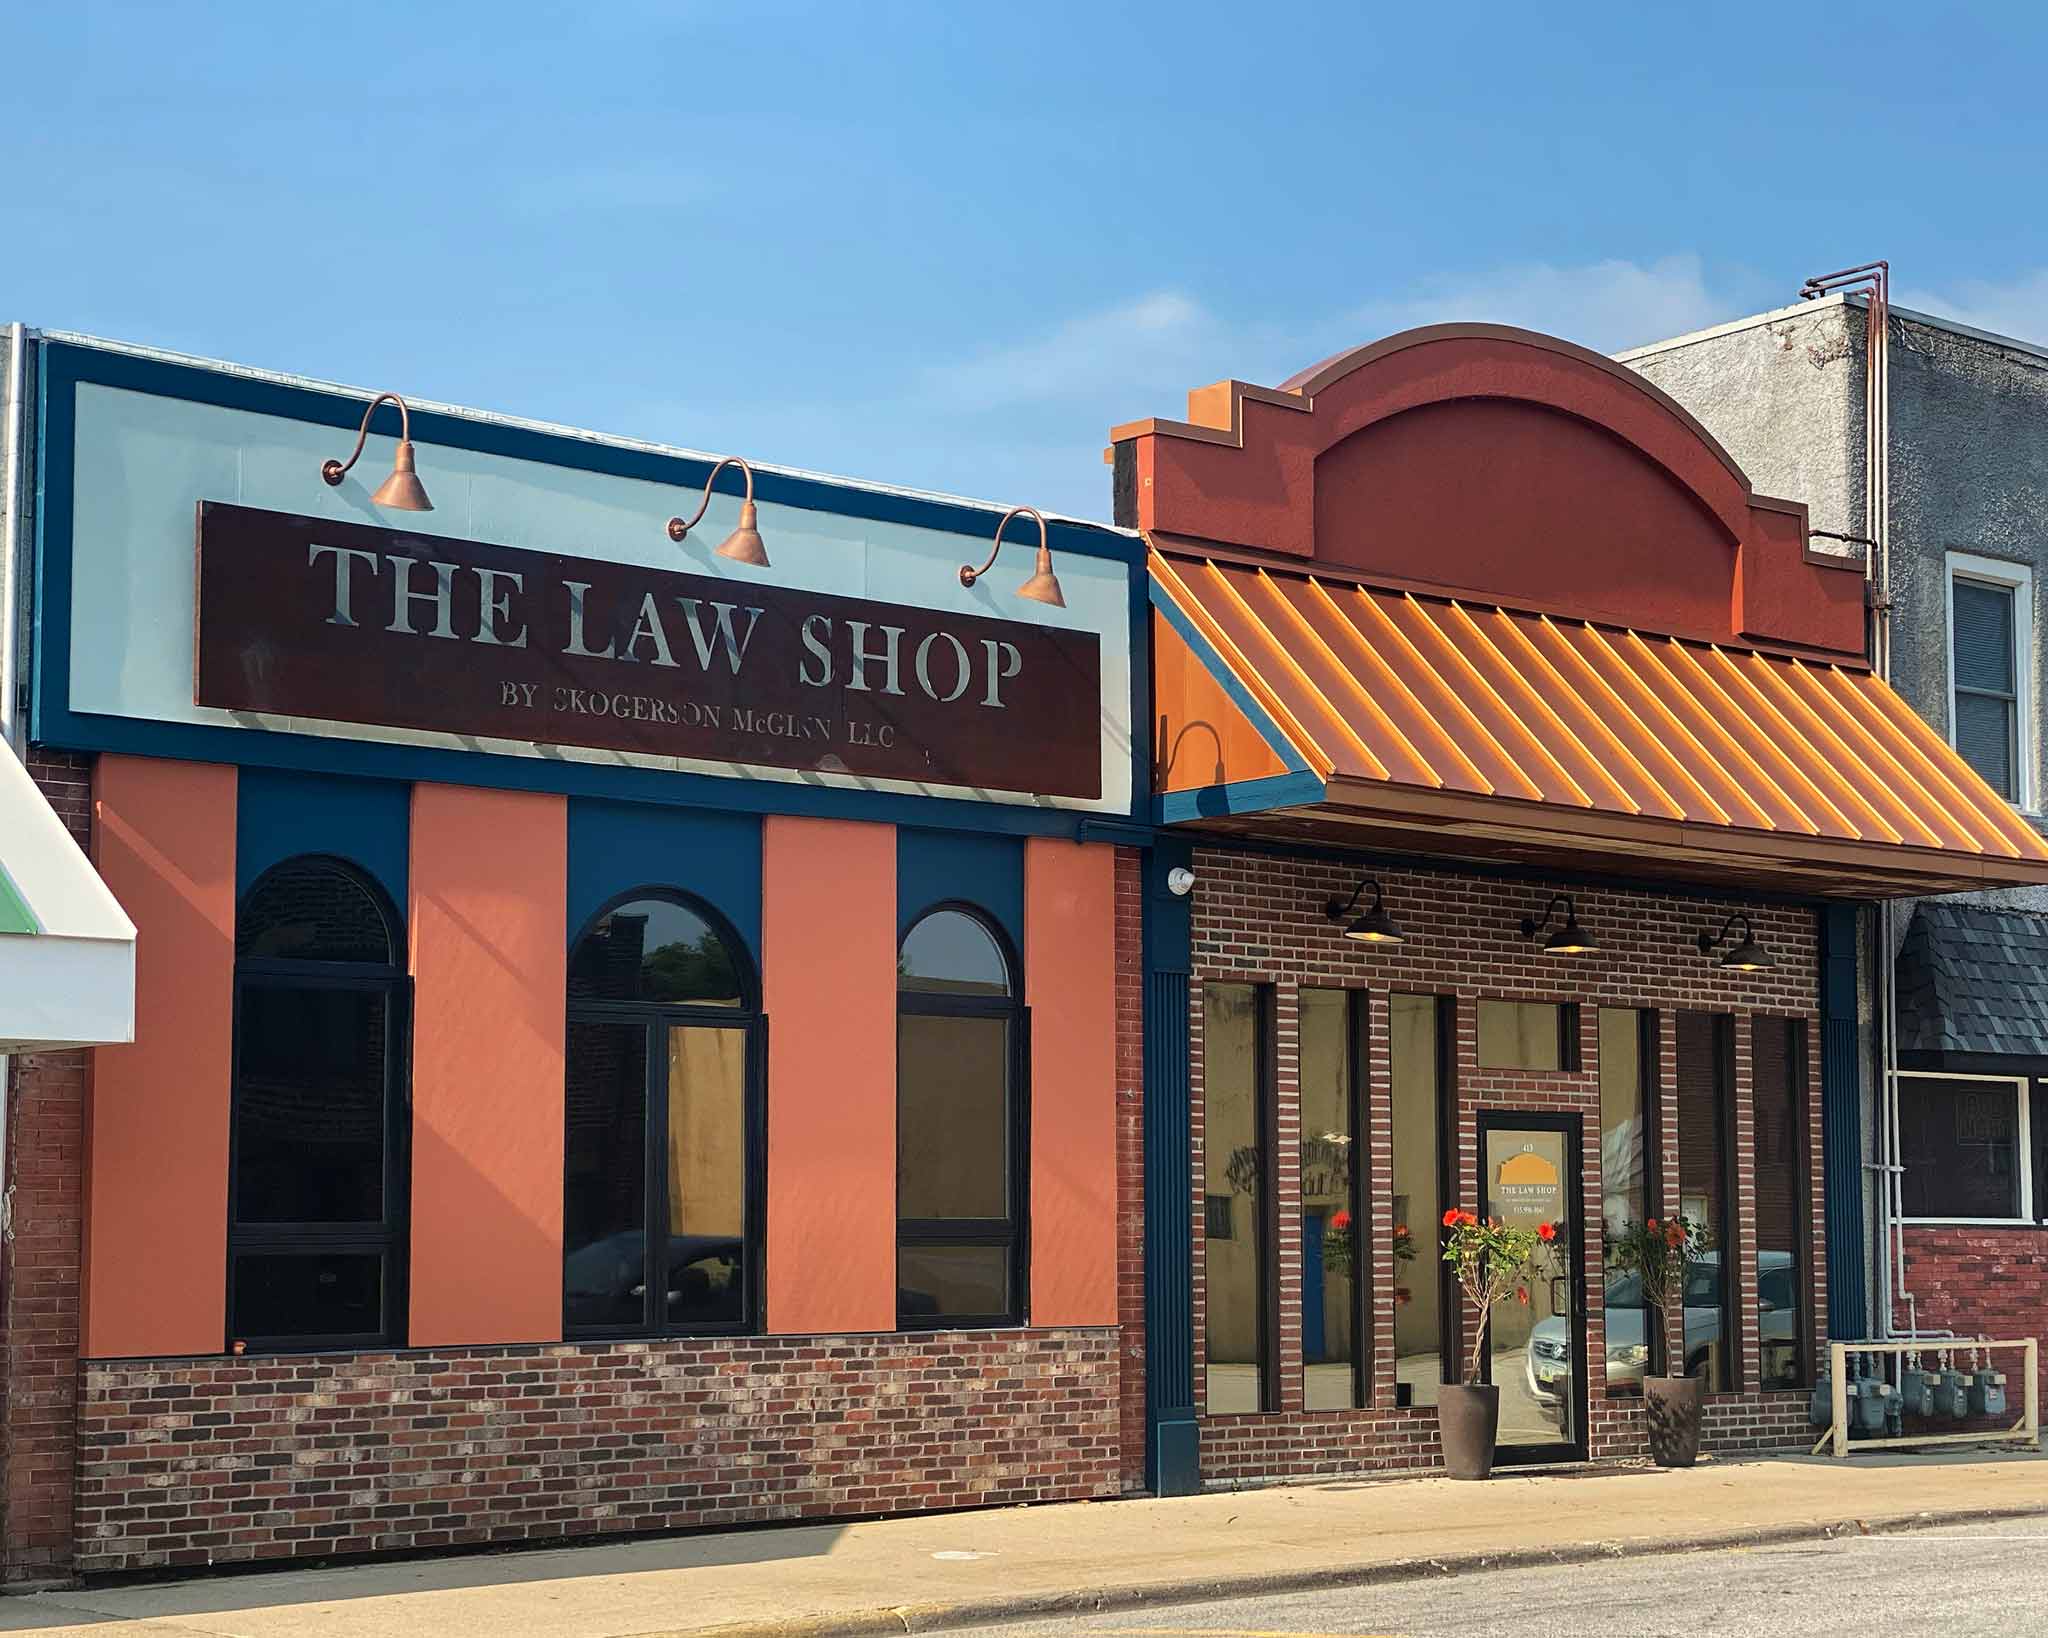 The Law Shop Building in Van Meter, Iowa